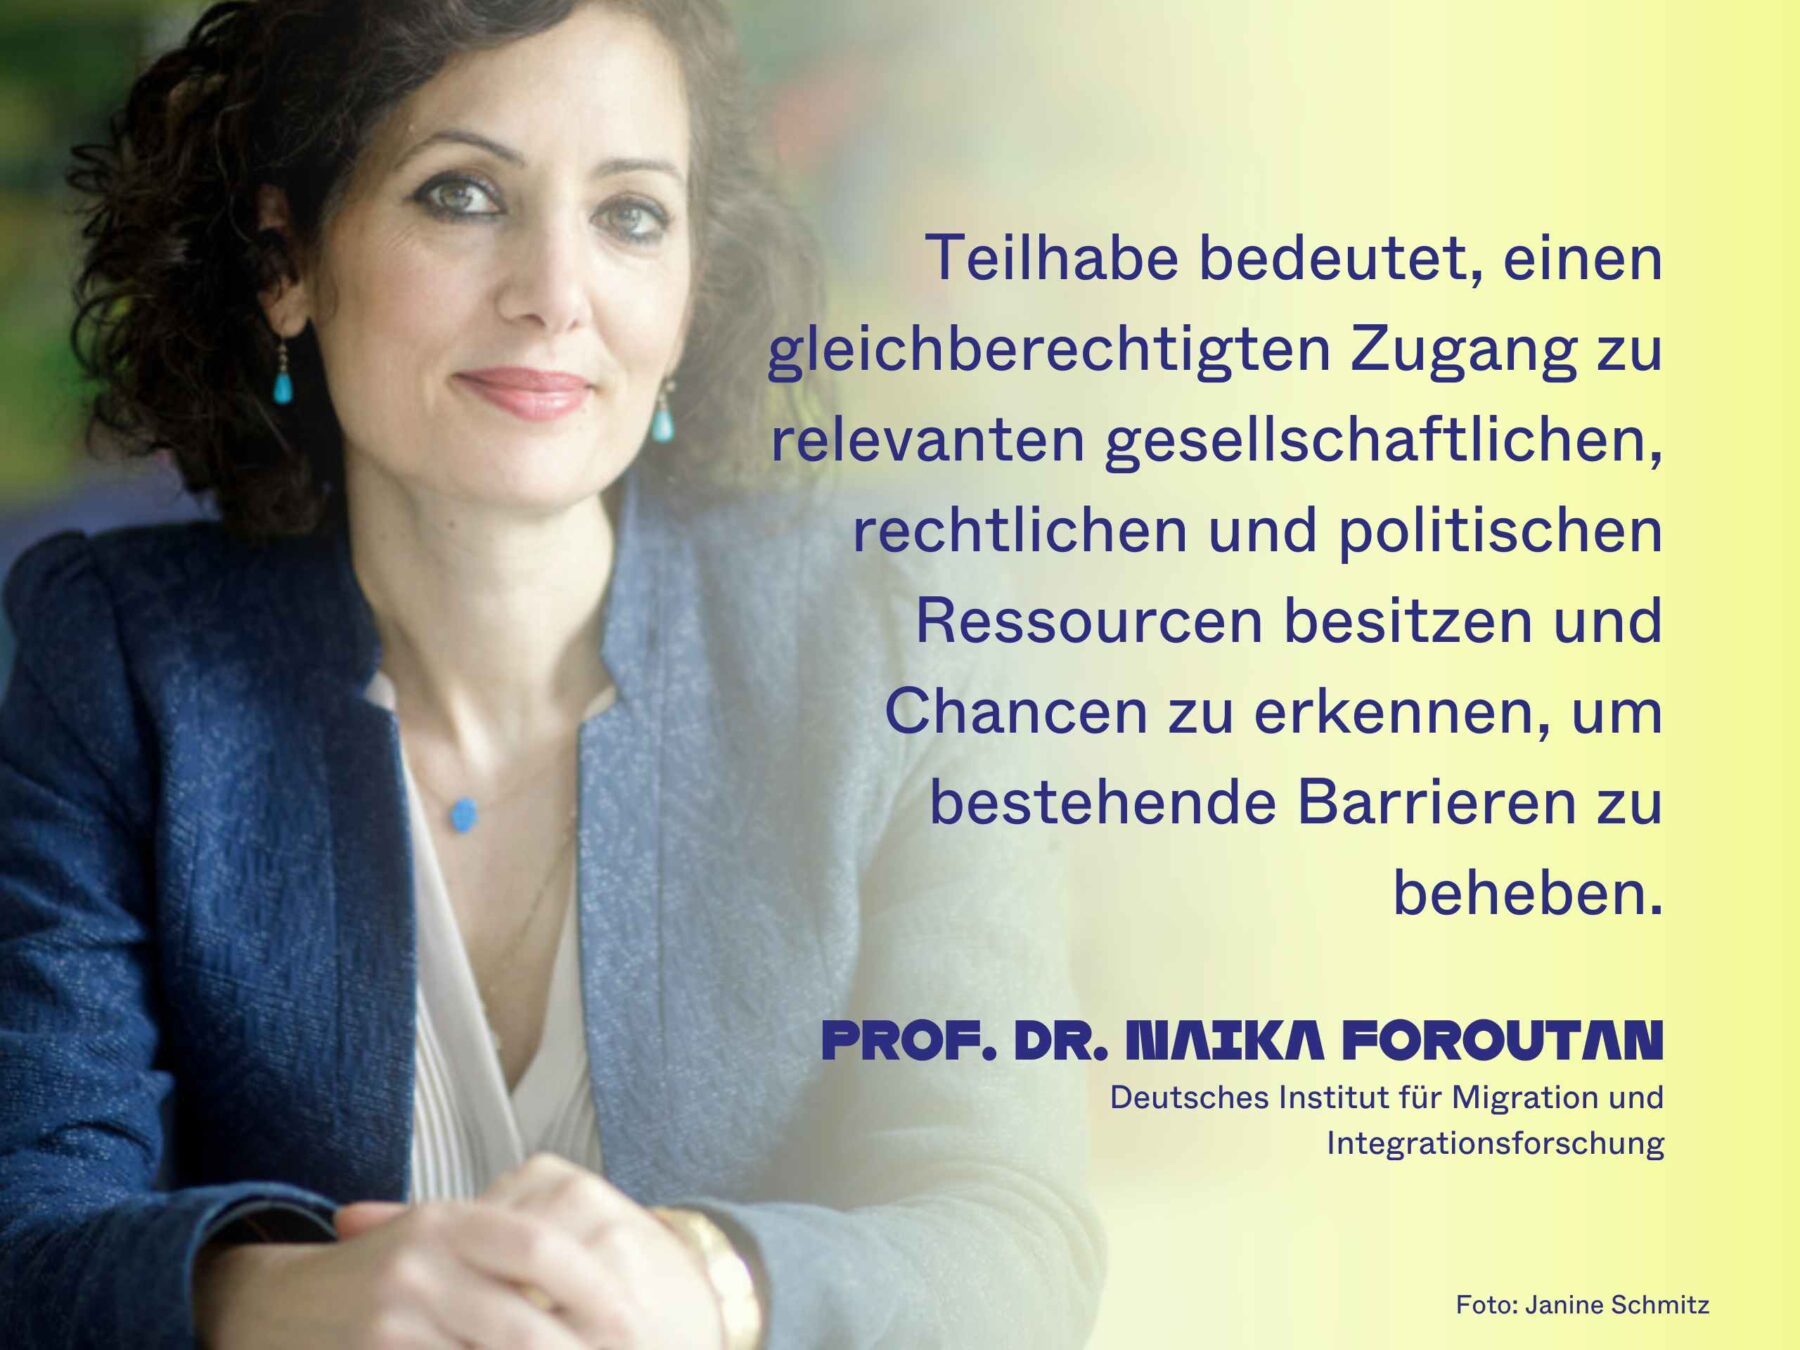 Prof. Dr. Naika Foroutan